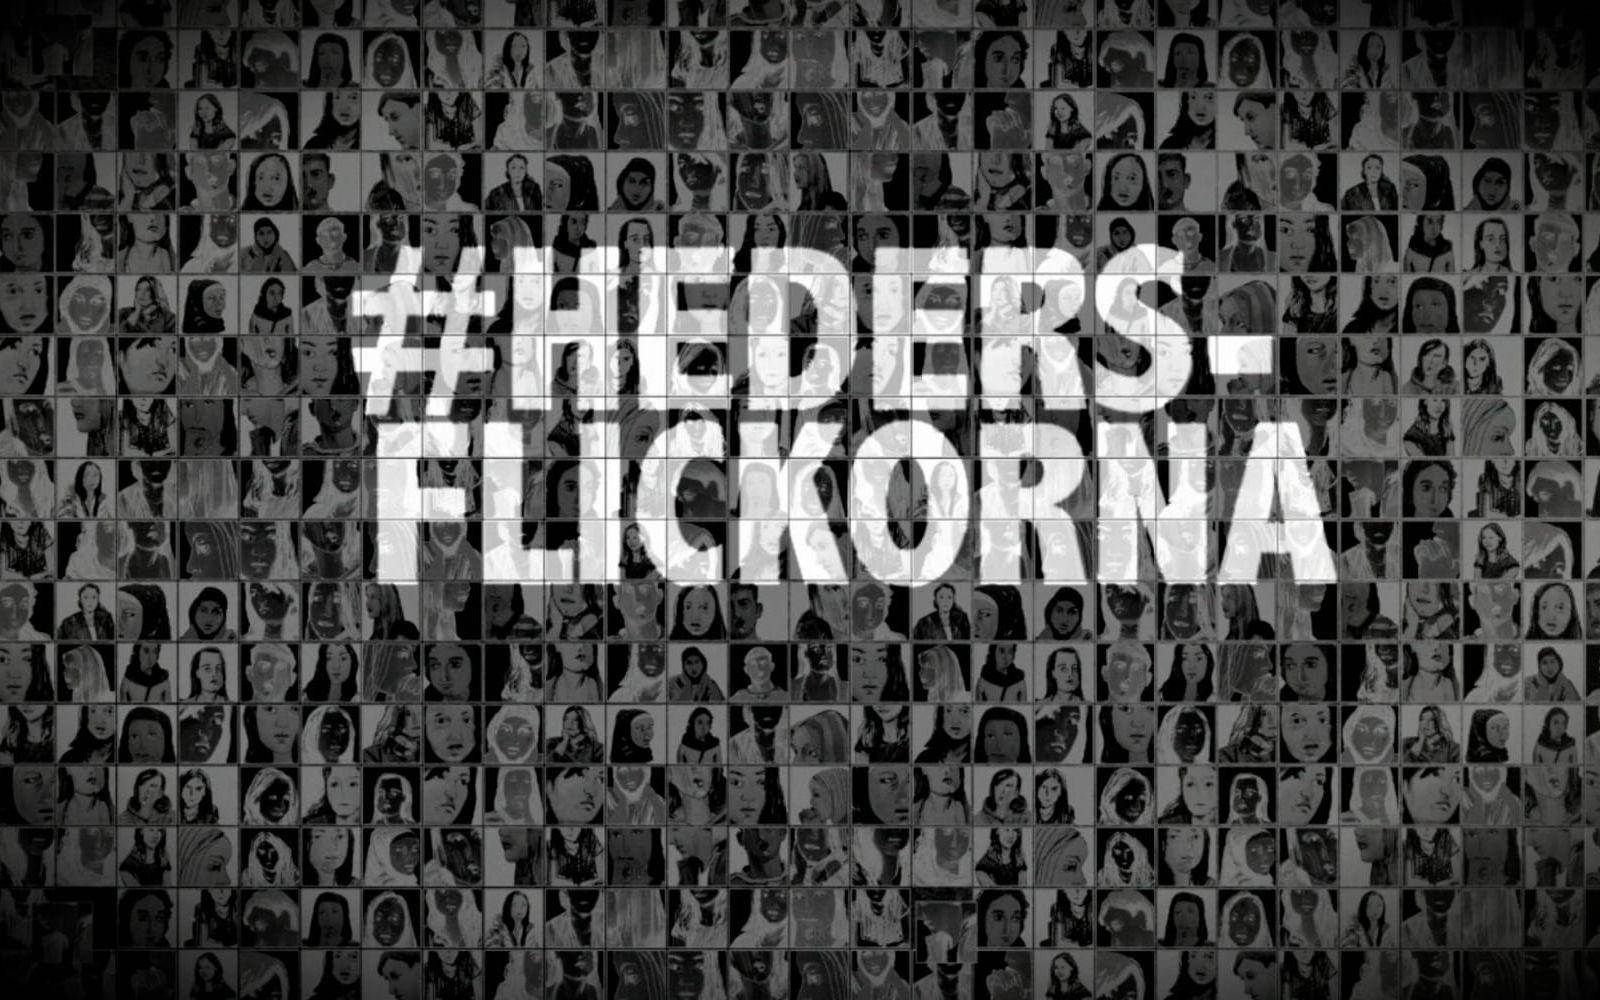 Granskningen #hedersflickorna är den största som gjorts i sitt slag i Sverige.